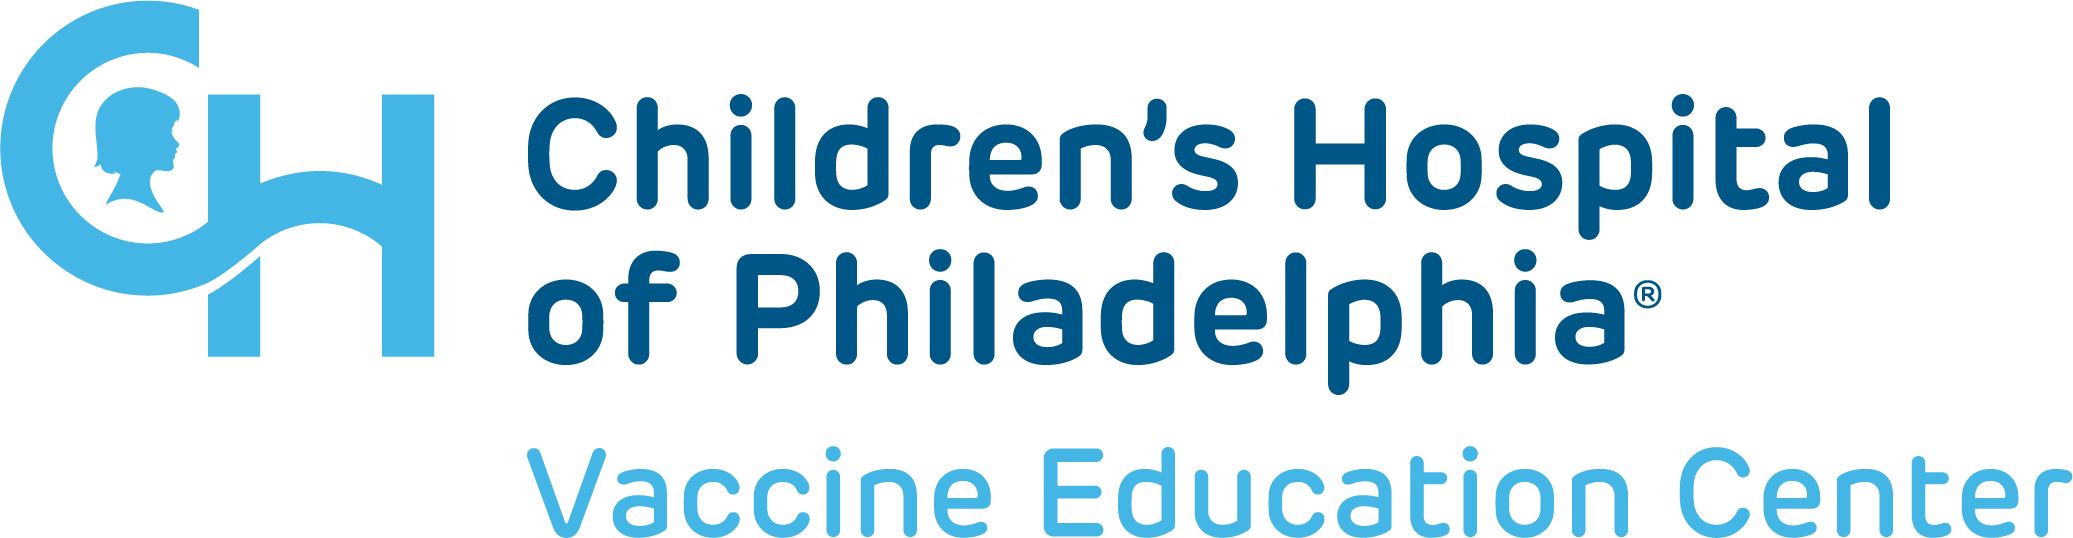 Children's Hospital of Philadelphia Vaccine Education Center